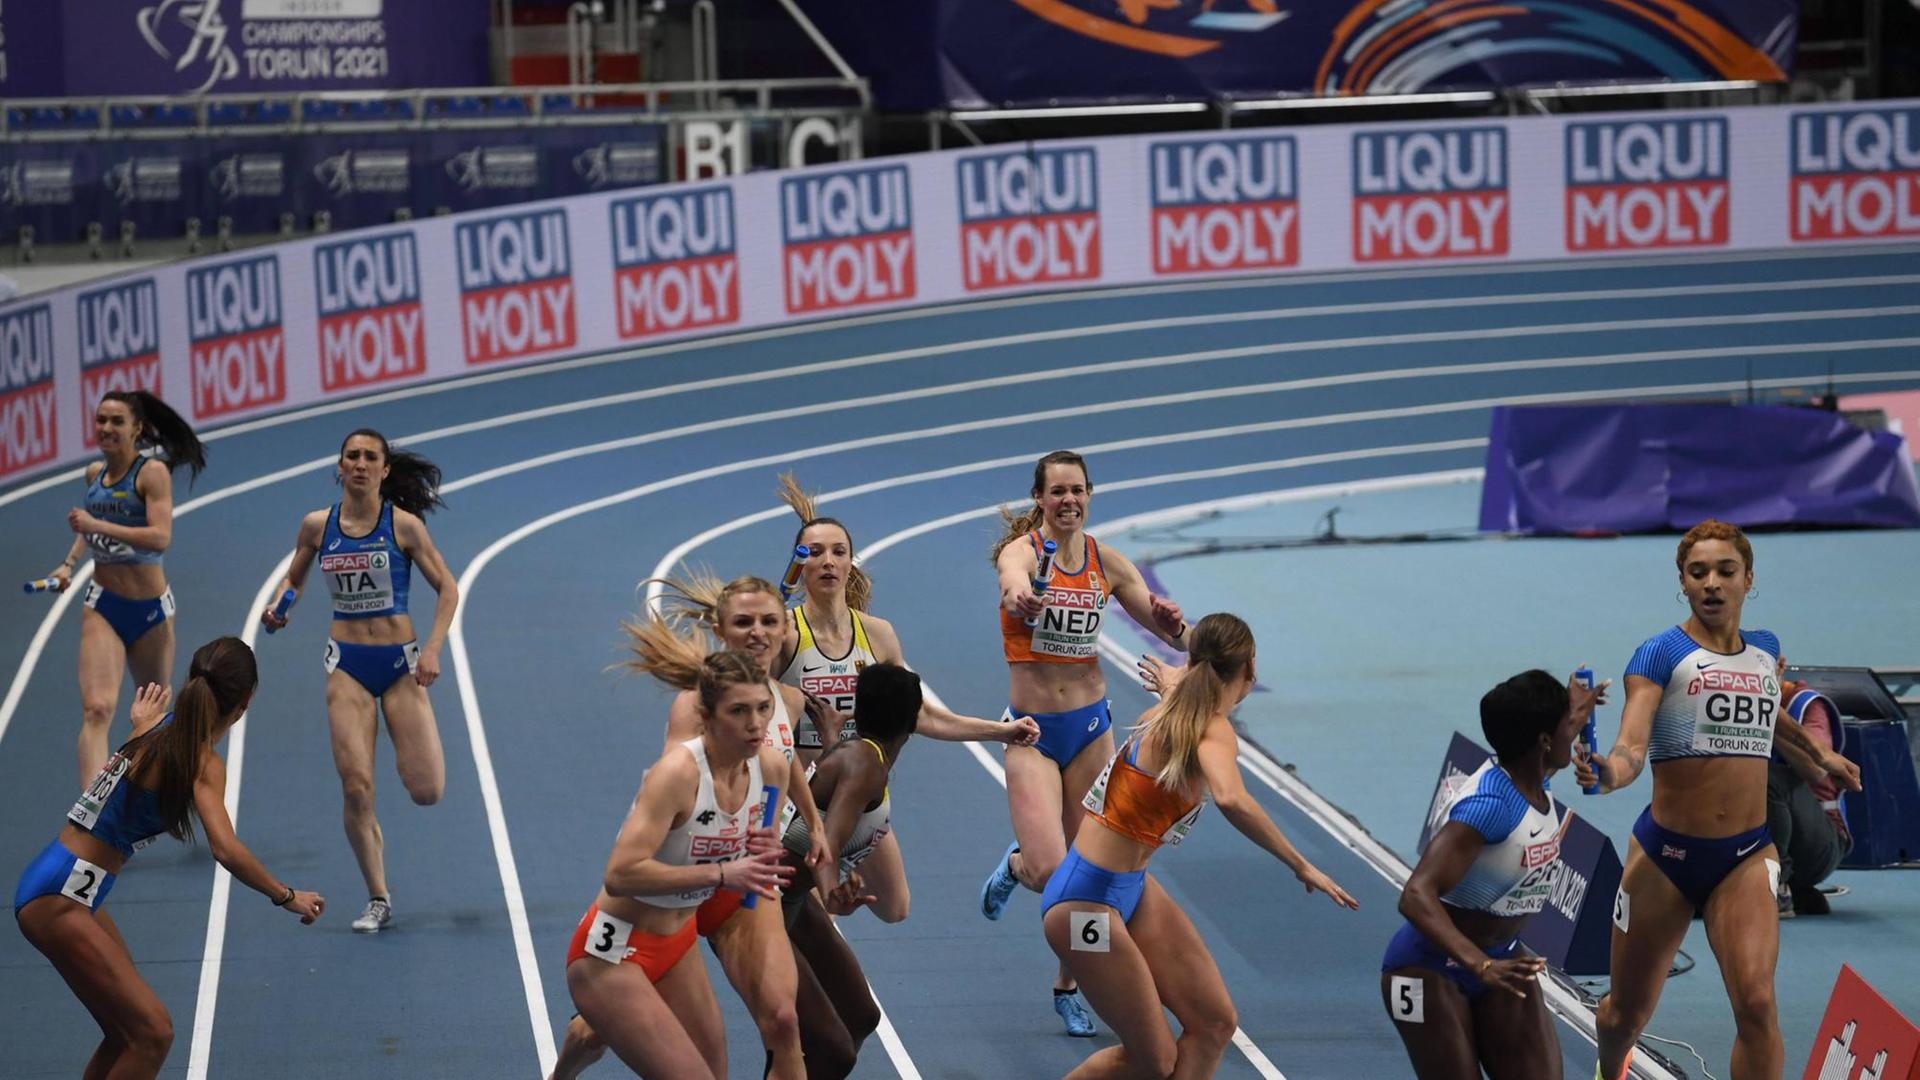 Übergabe bei der 4x400-Meter-Staffel der Frauen bei der Hallen-EM in Torun 2021.